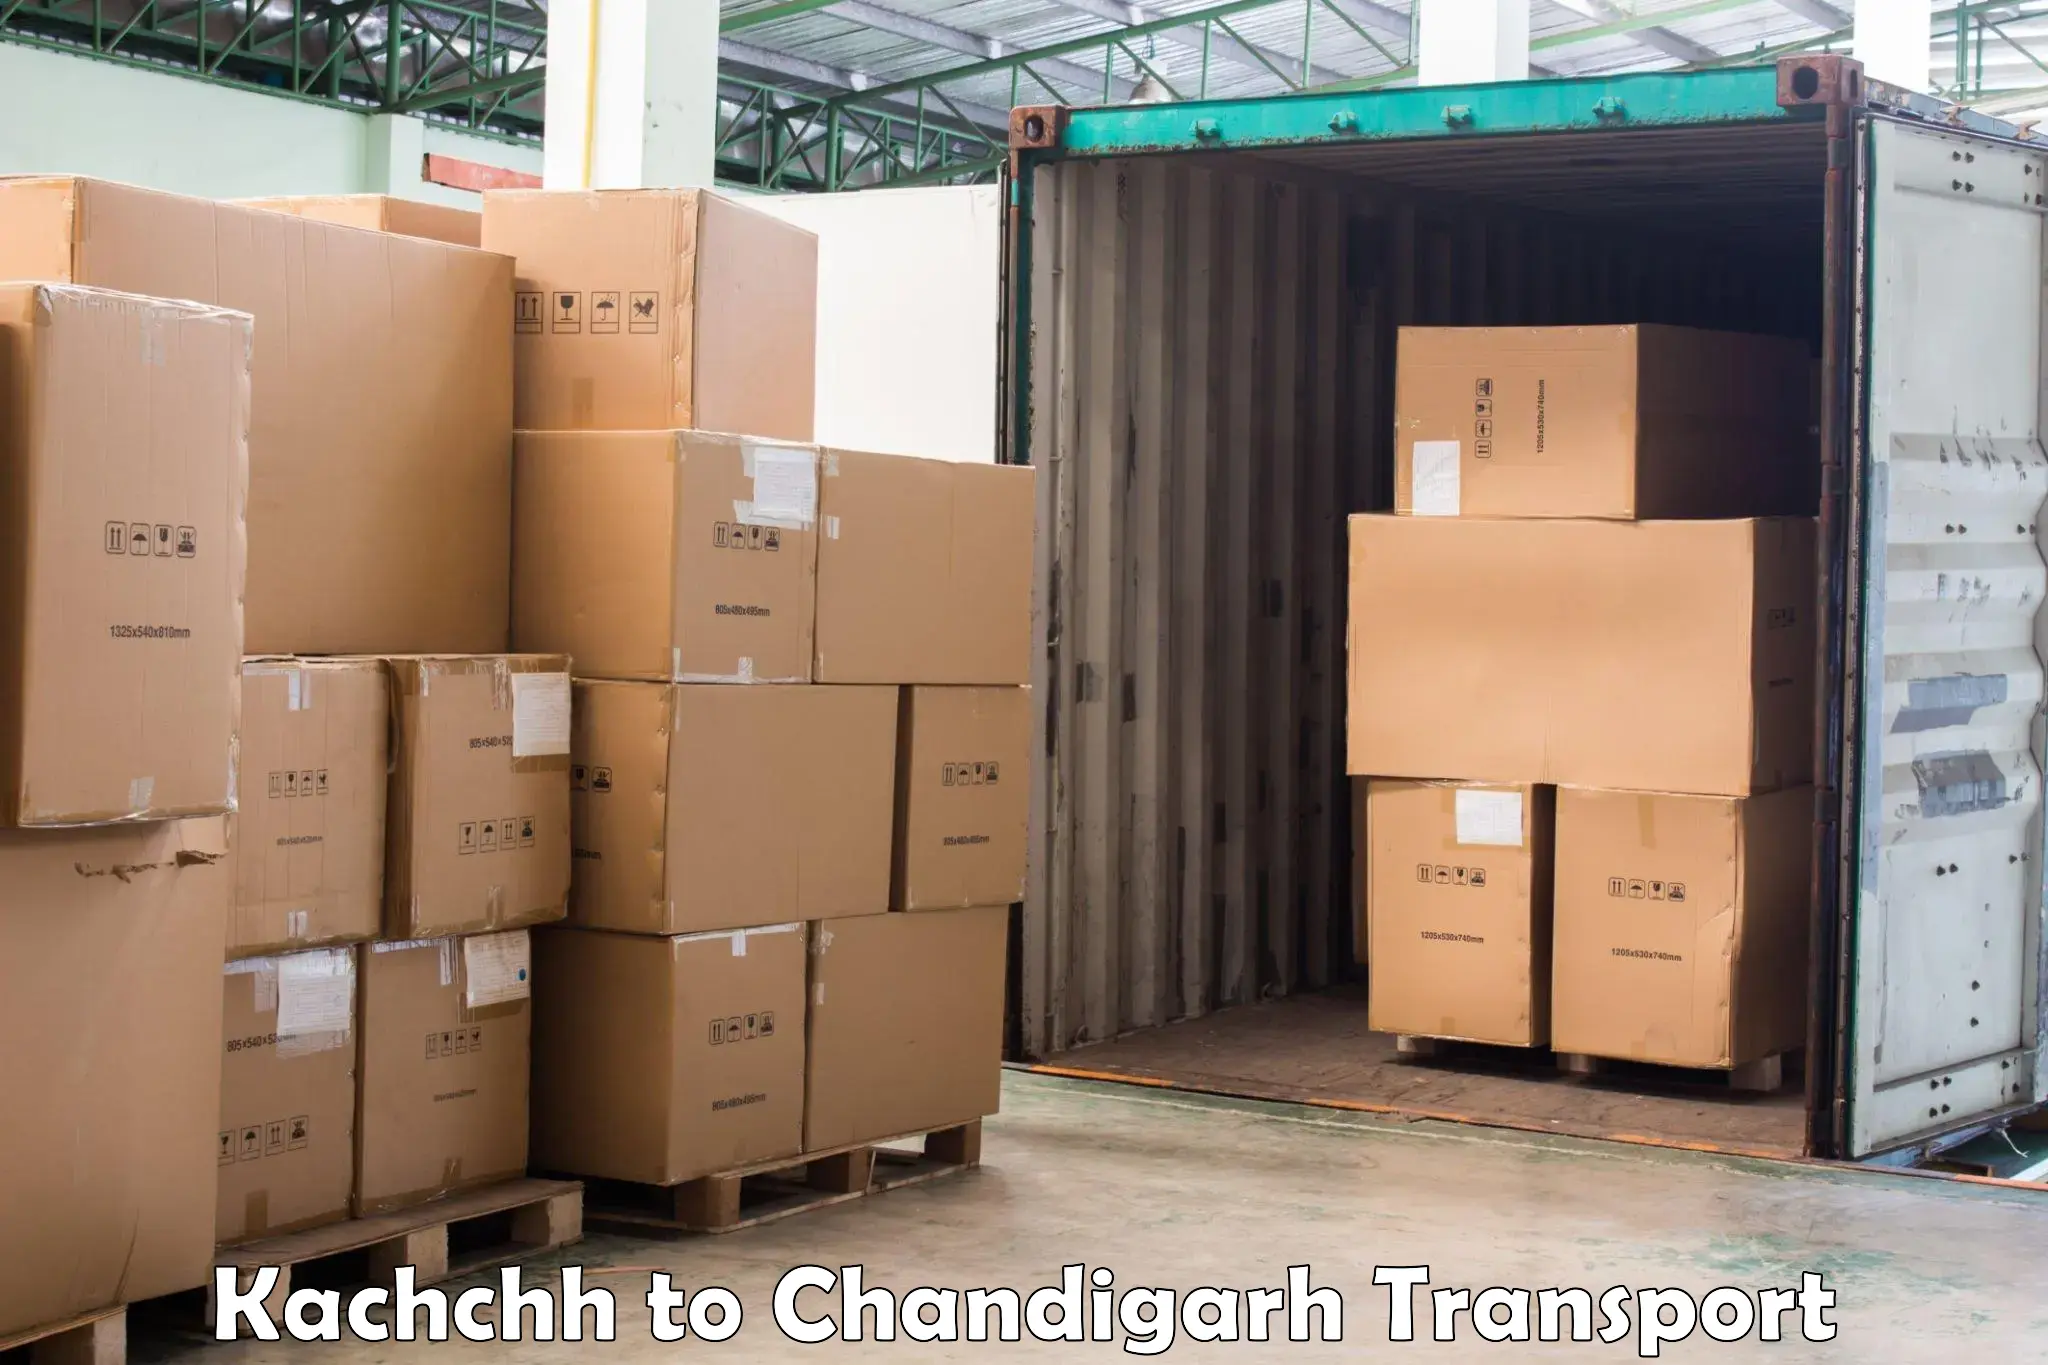 Online transport service Kachchh to Chandigarh